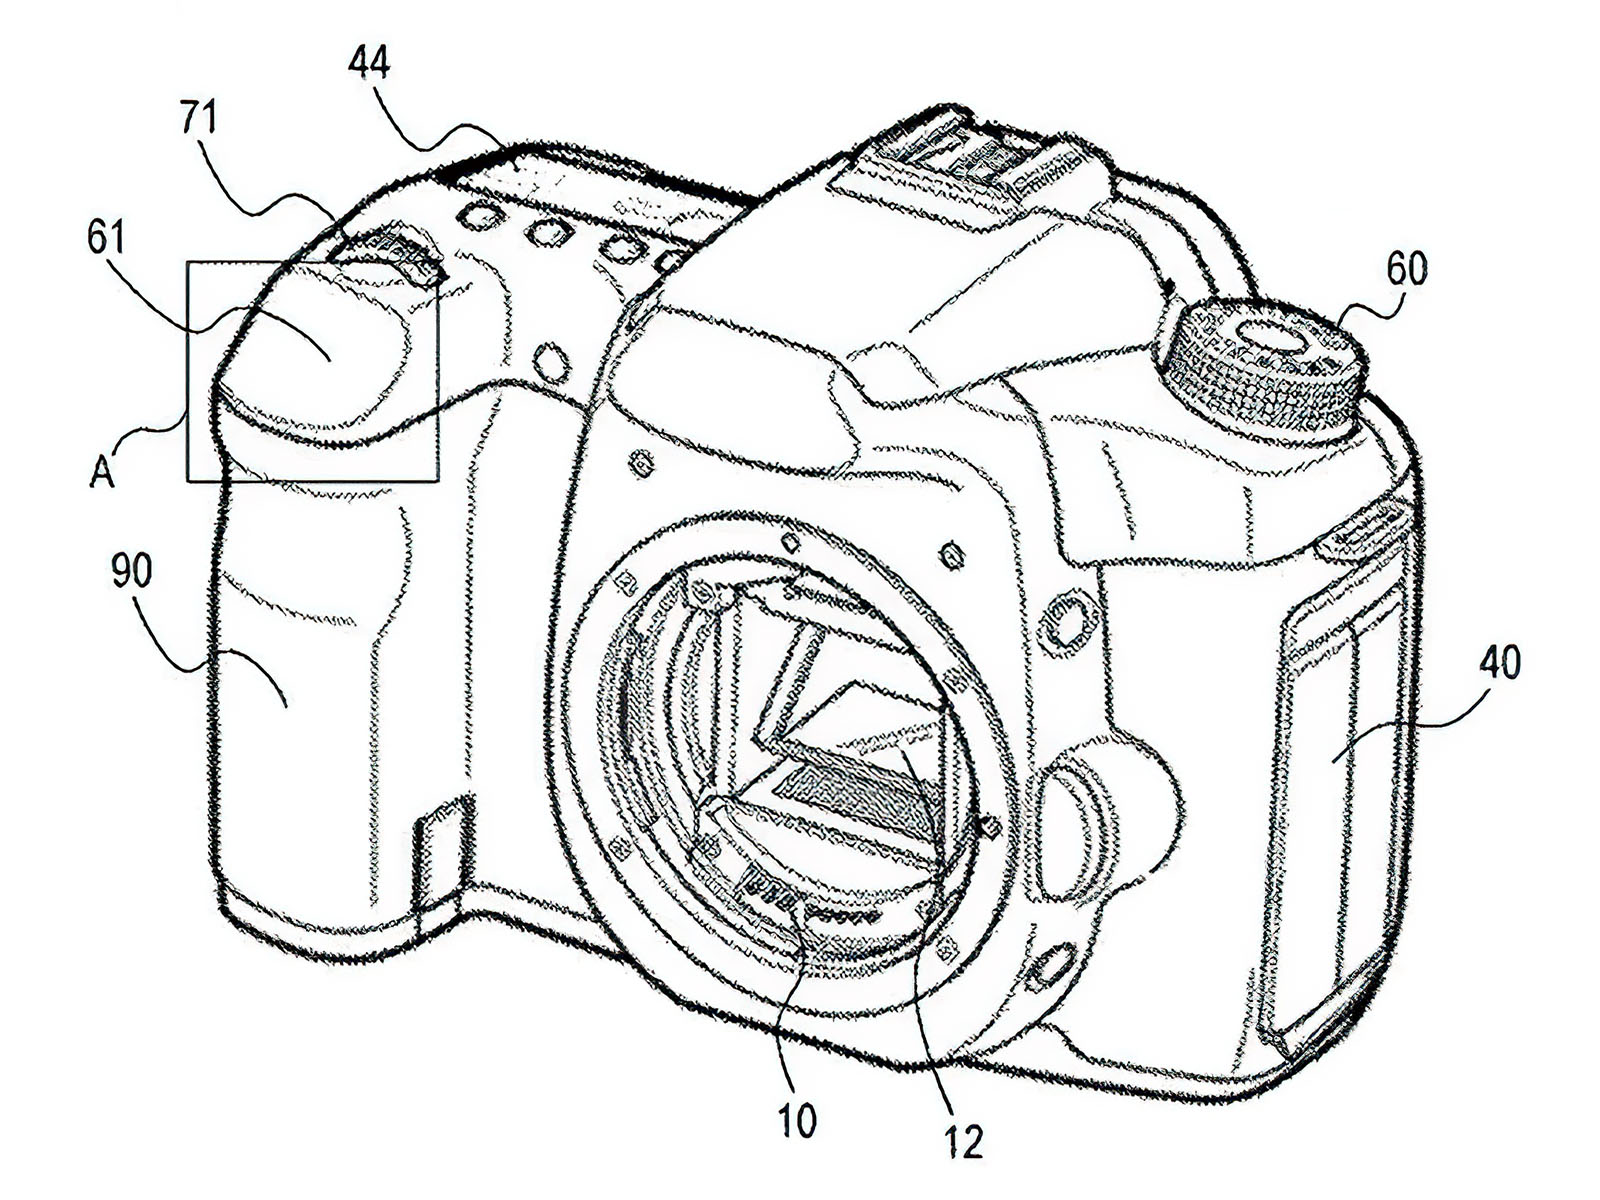 Phát hiện bằng sáng chế của Canon về nút chụp cảm ứng trên máy ảnh